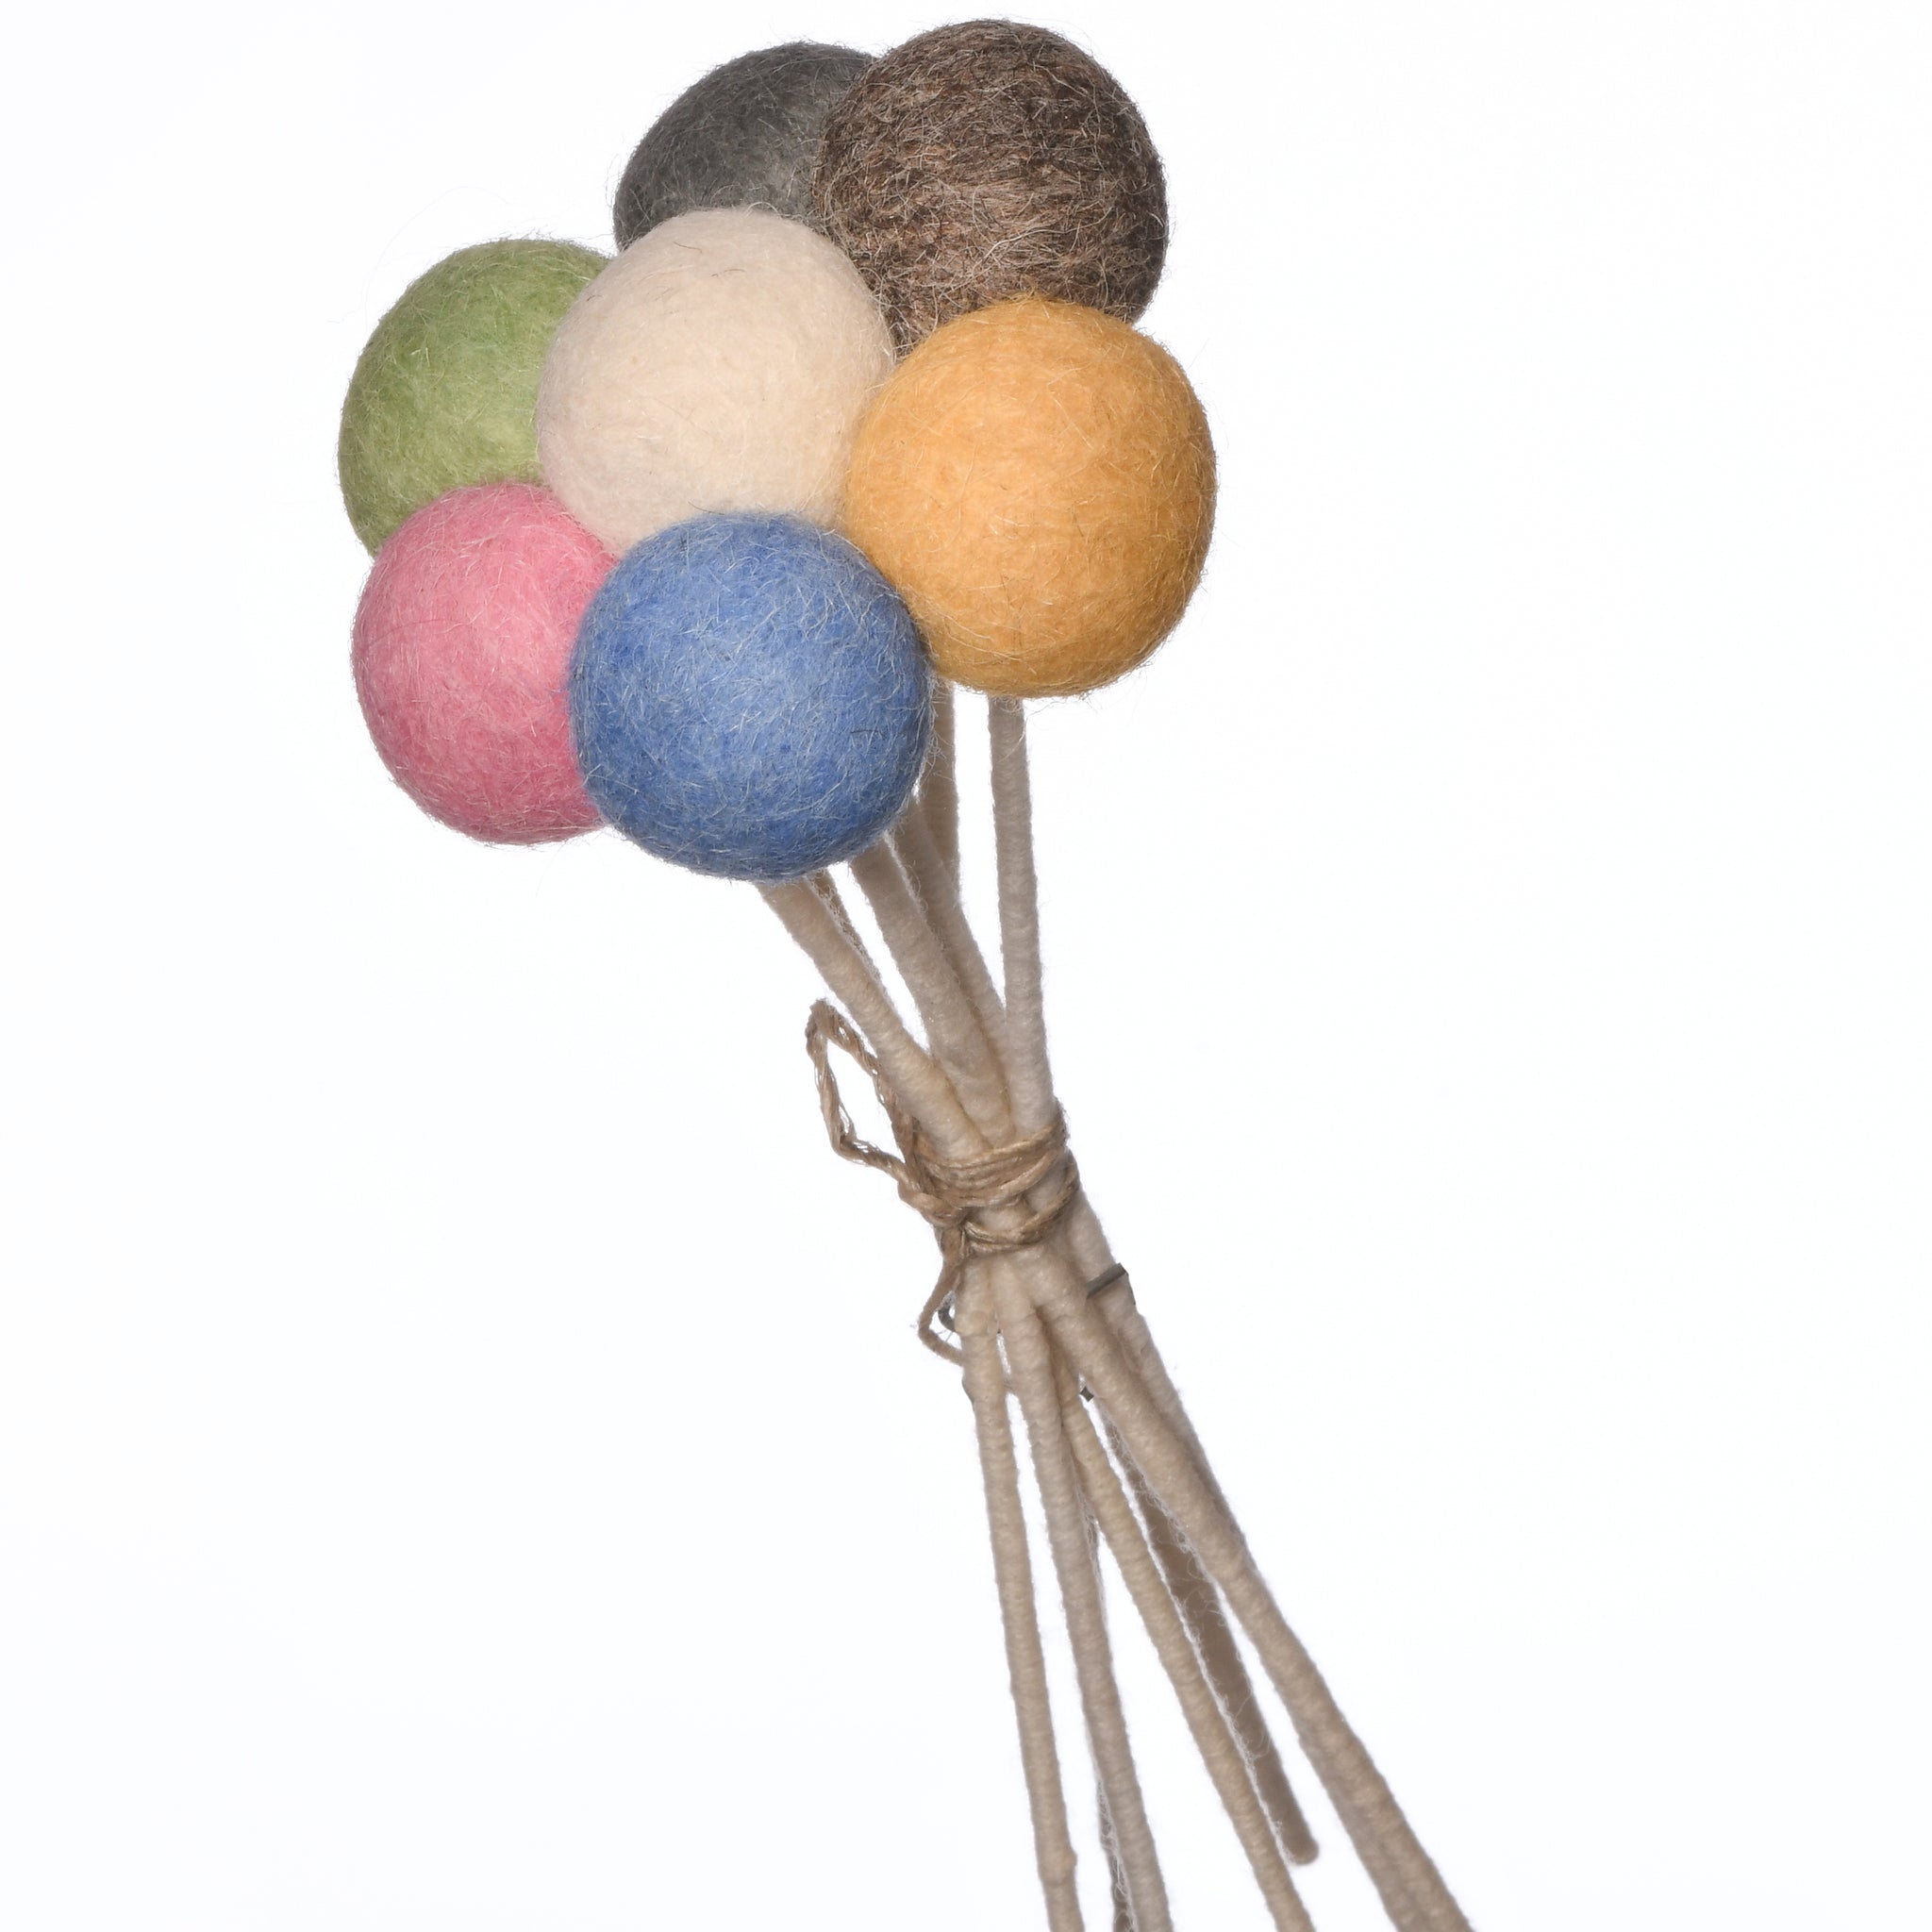 New Zealand Wool Flower Ball Stick For Bouquet (Set Of 7)